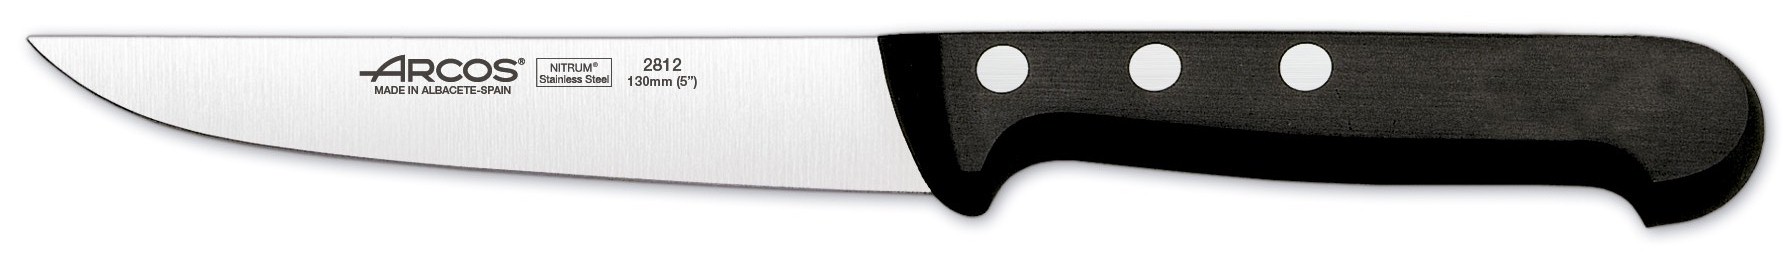 סכין מטבח ארקוס דגם 2812 - Arcos